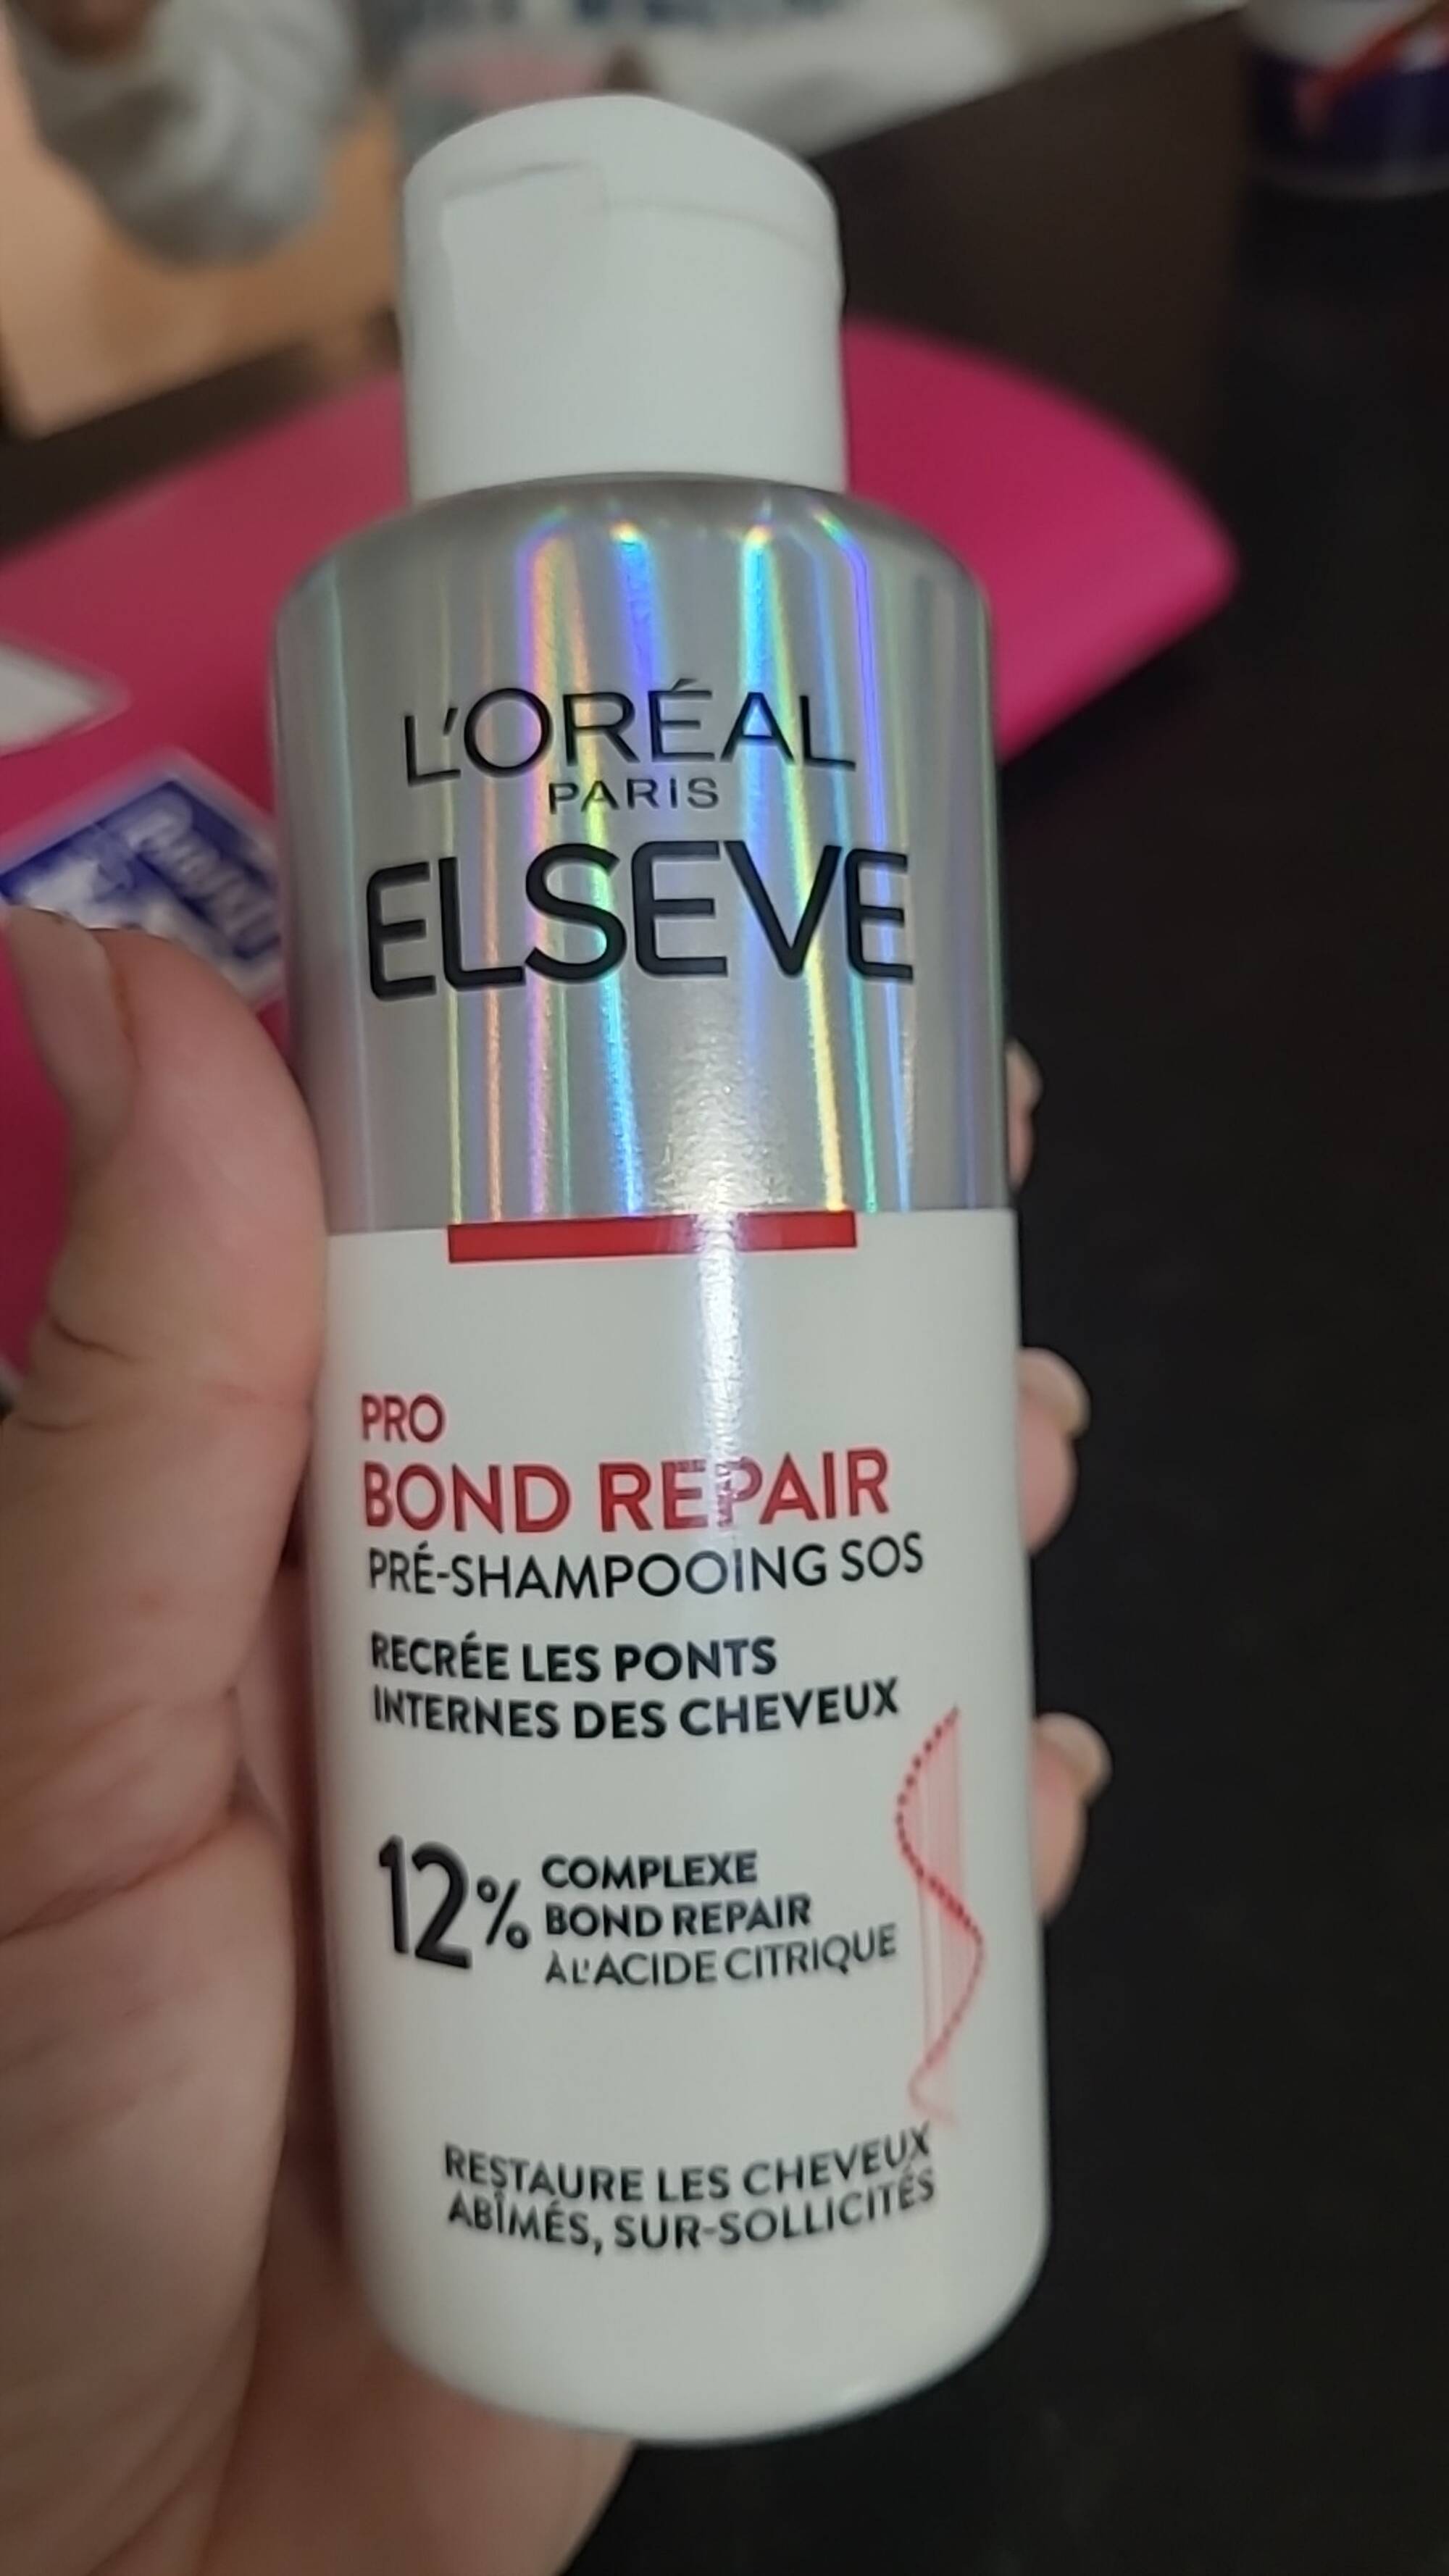 L'ORÉAL ELSEVE - Pro bond repair - Pré-shampooing SOS